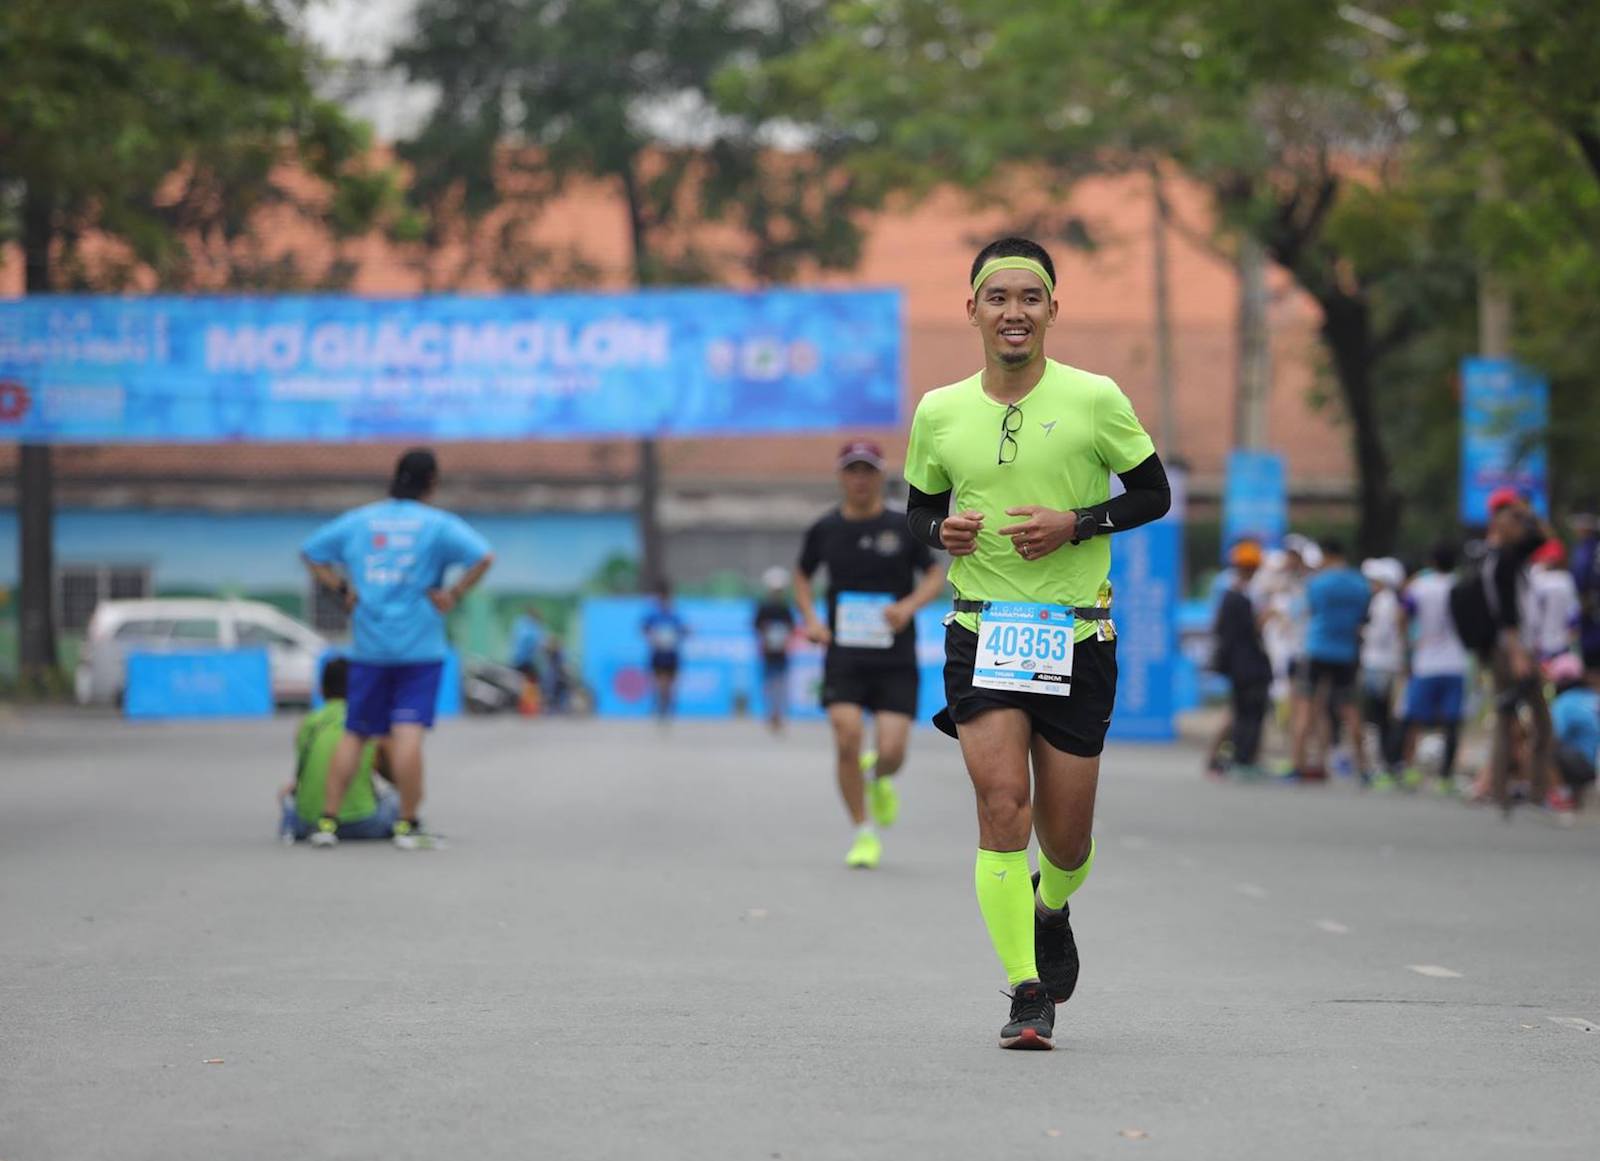 Kí sự HCMC International Marathon 2019 - Lần 2 chinh phục Full Marathon trên đường nhựa - hcmc marathon 2018 thuan bui 1